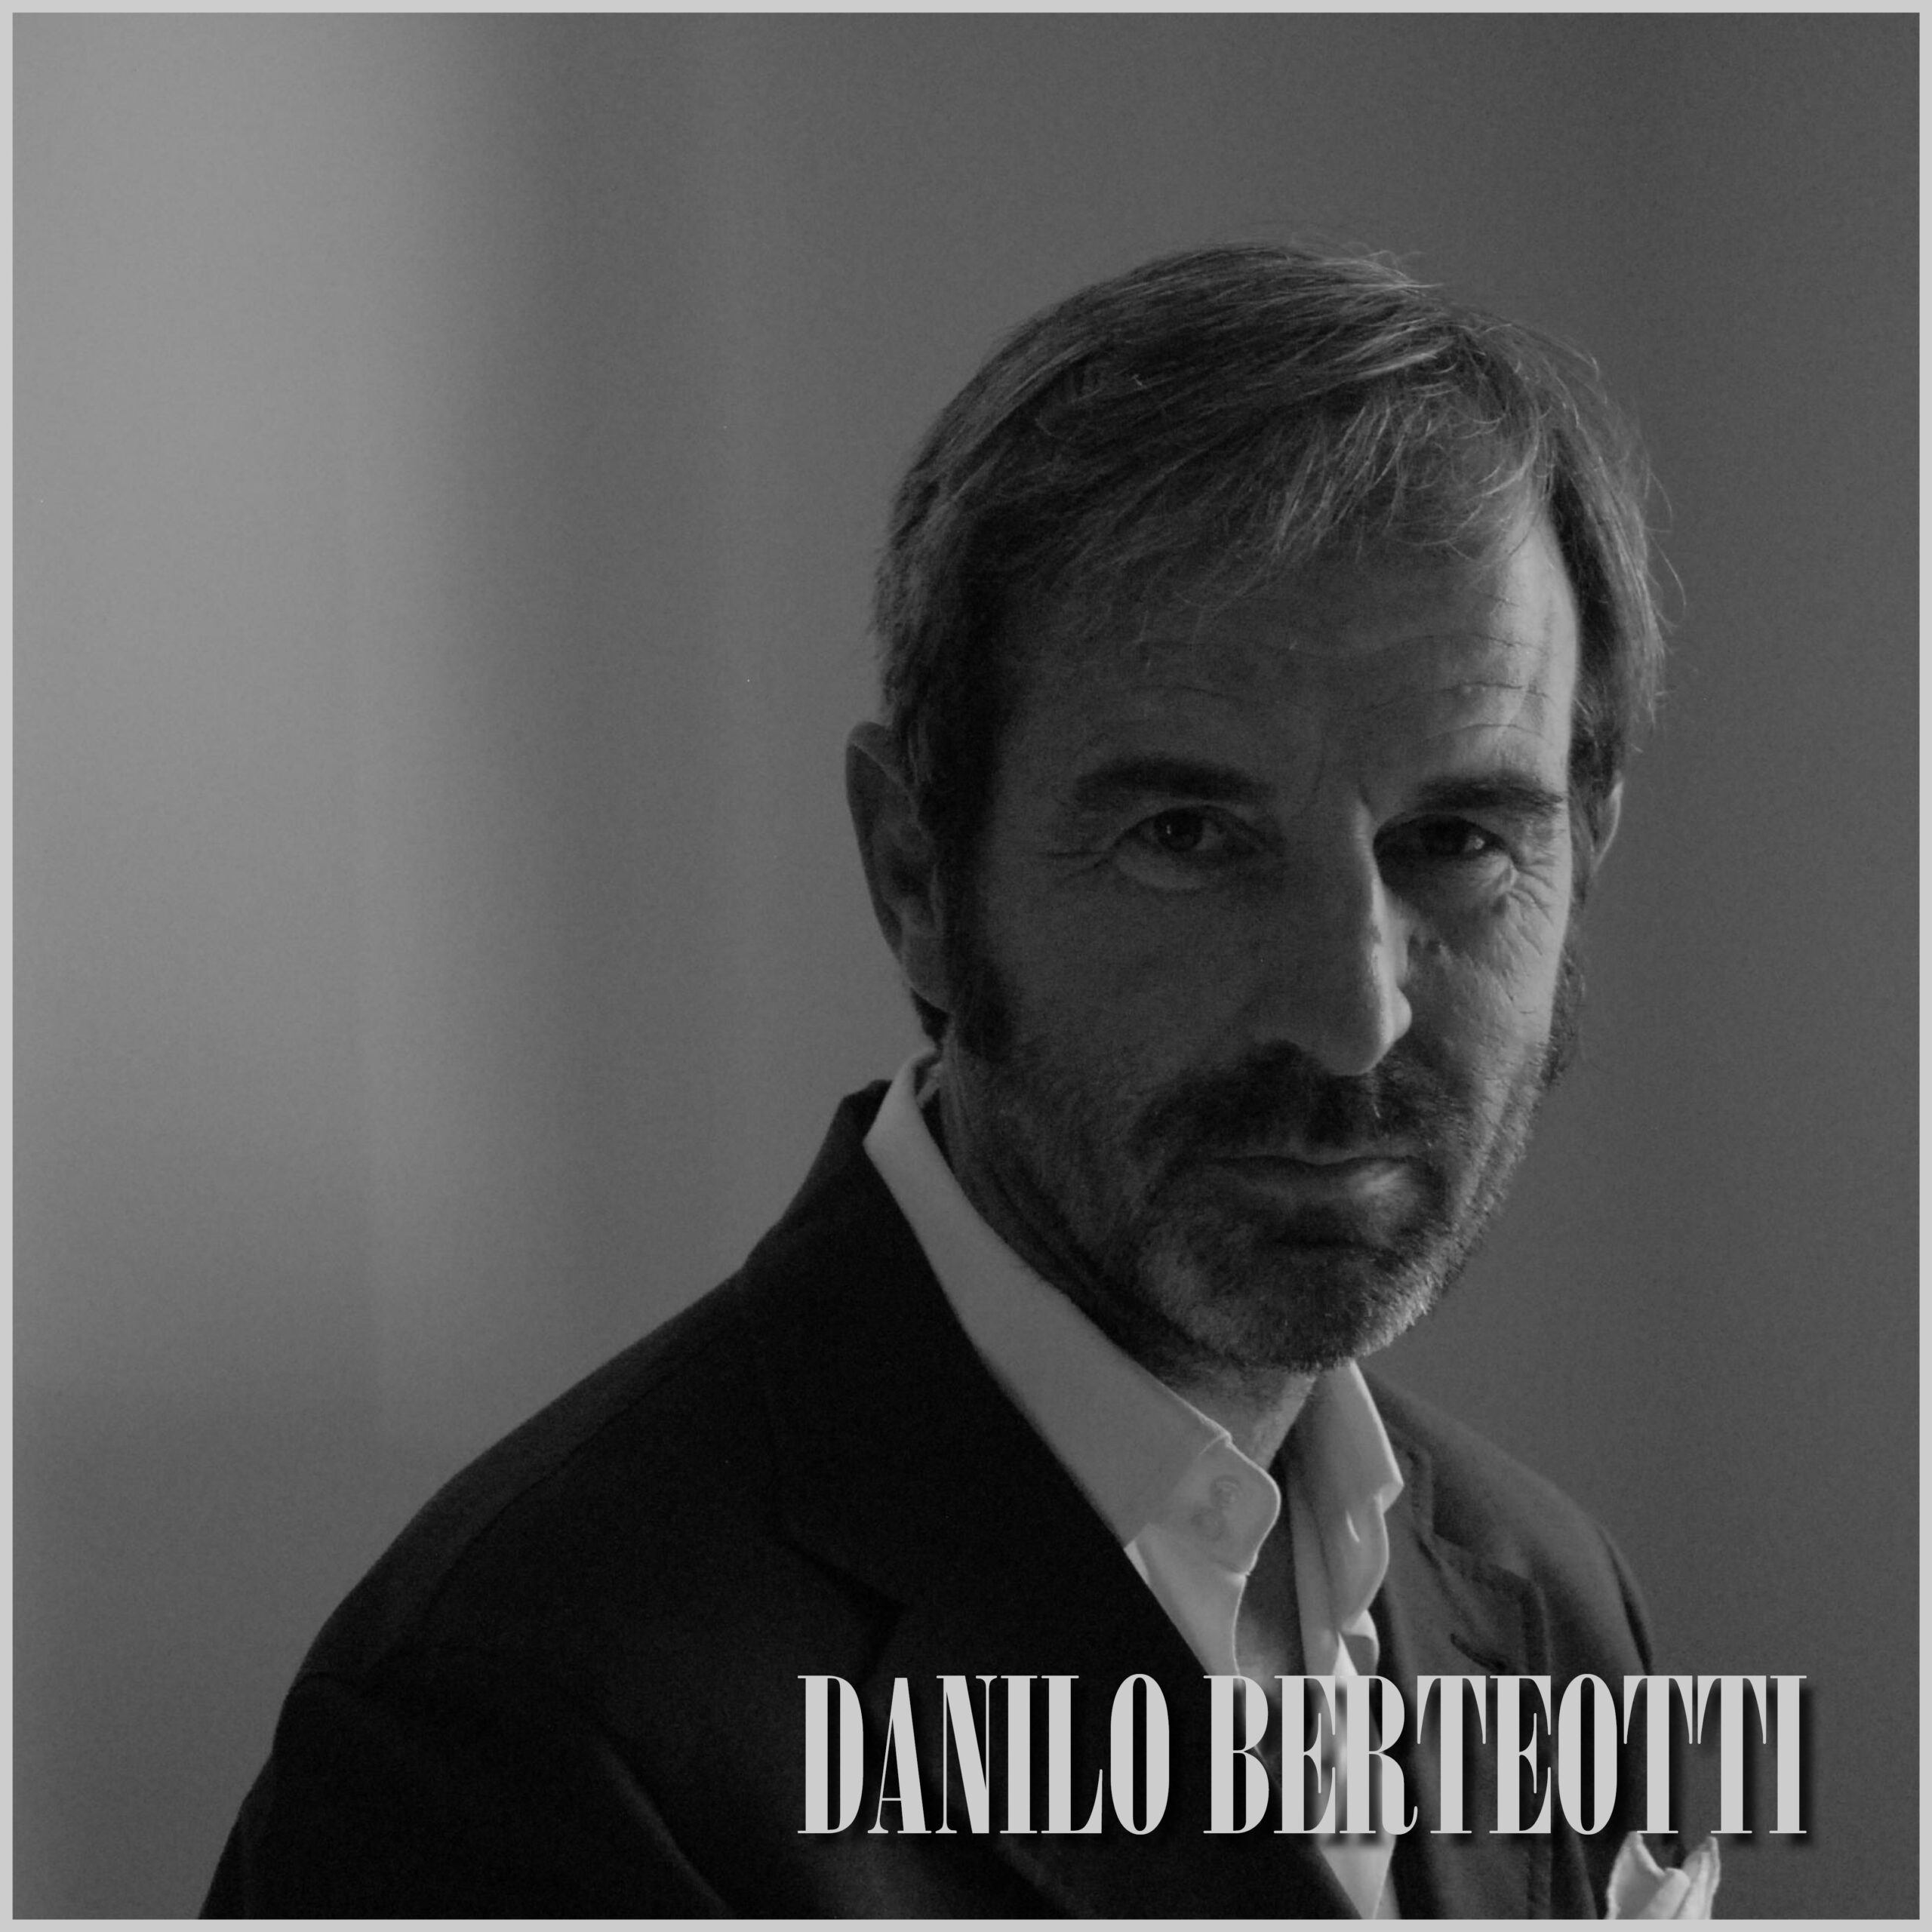 Danilo Berteotti